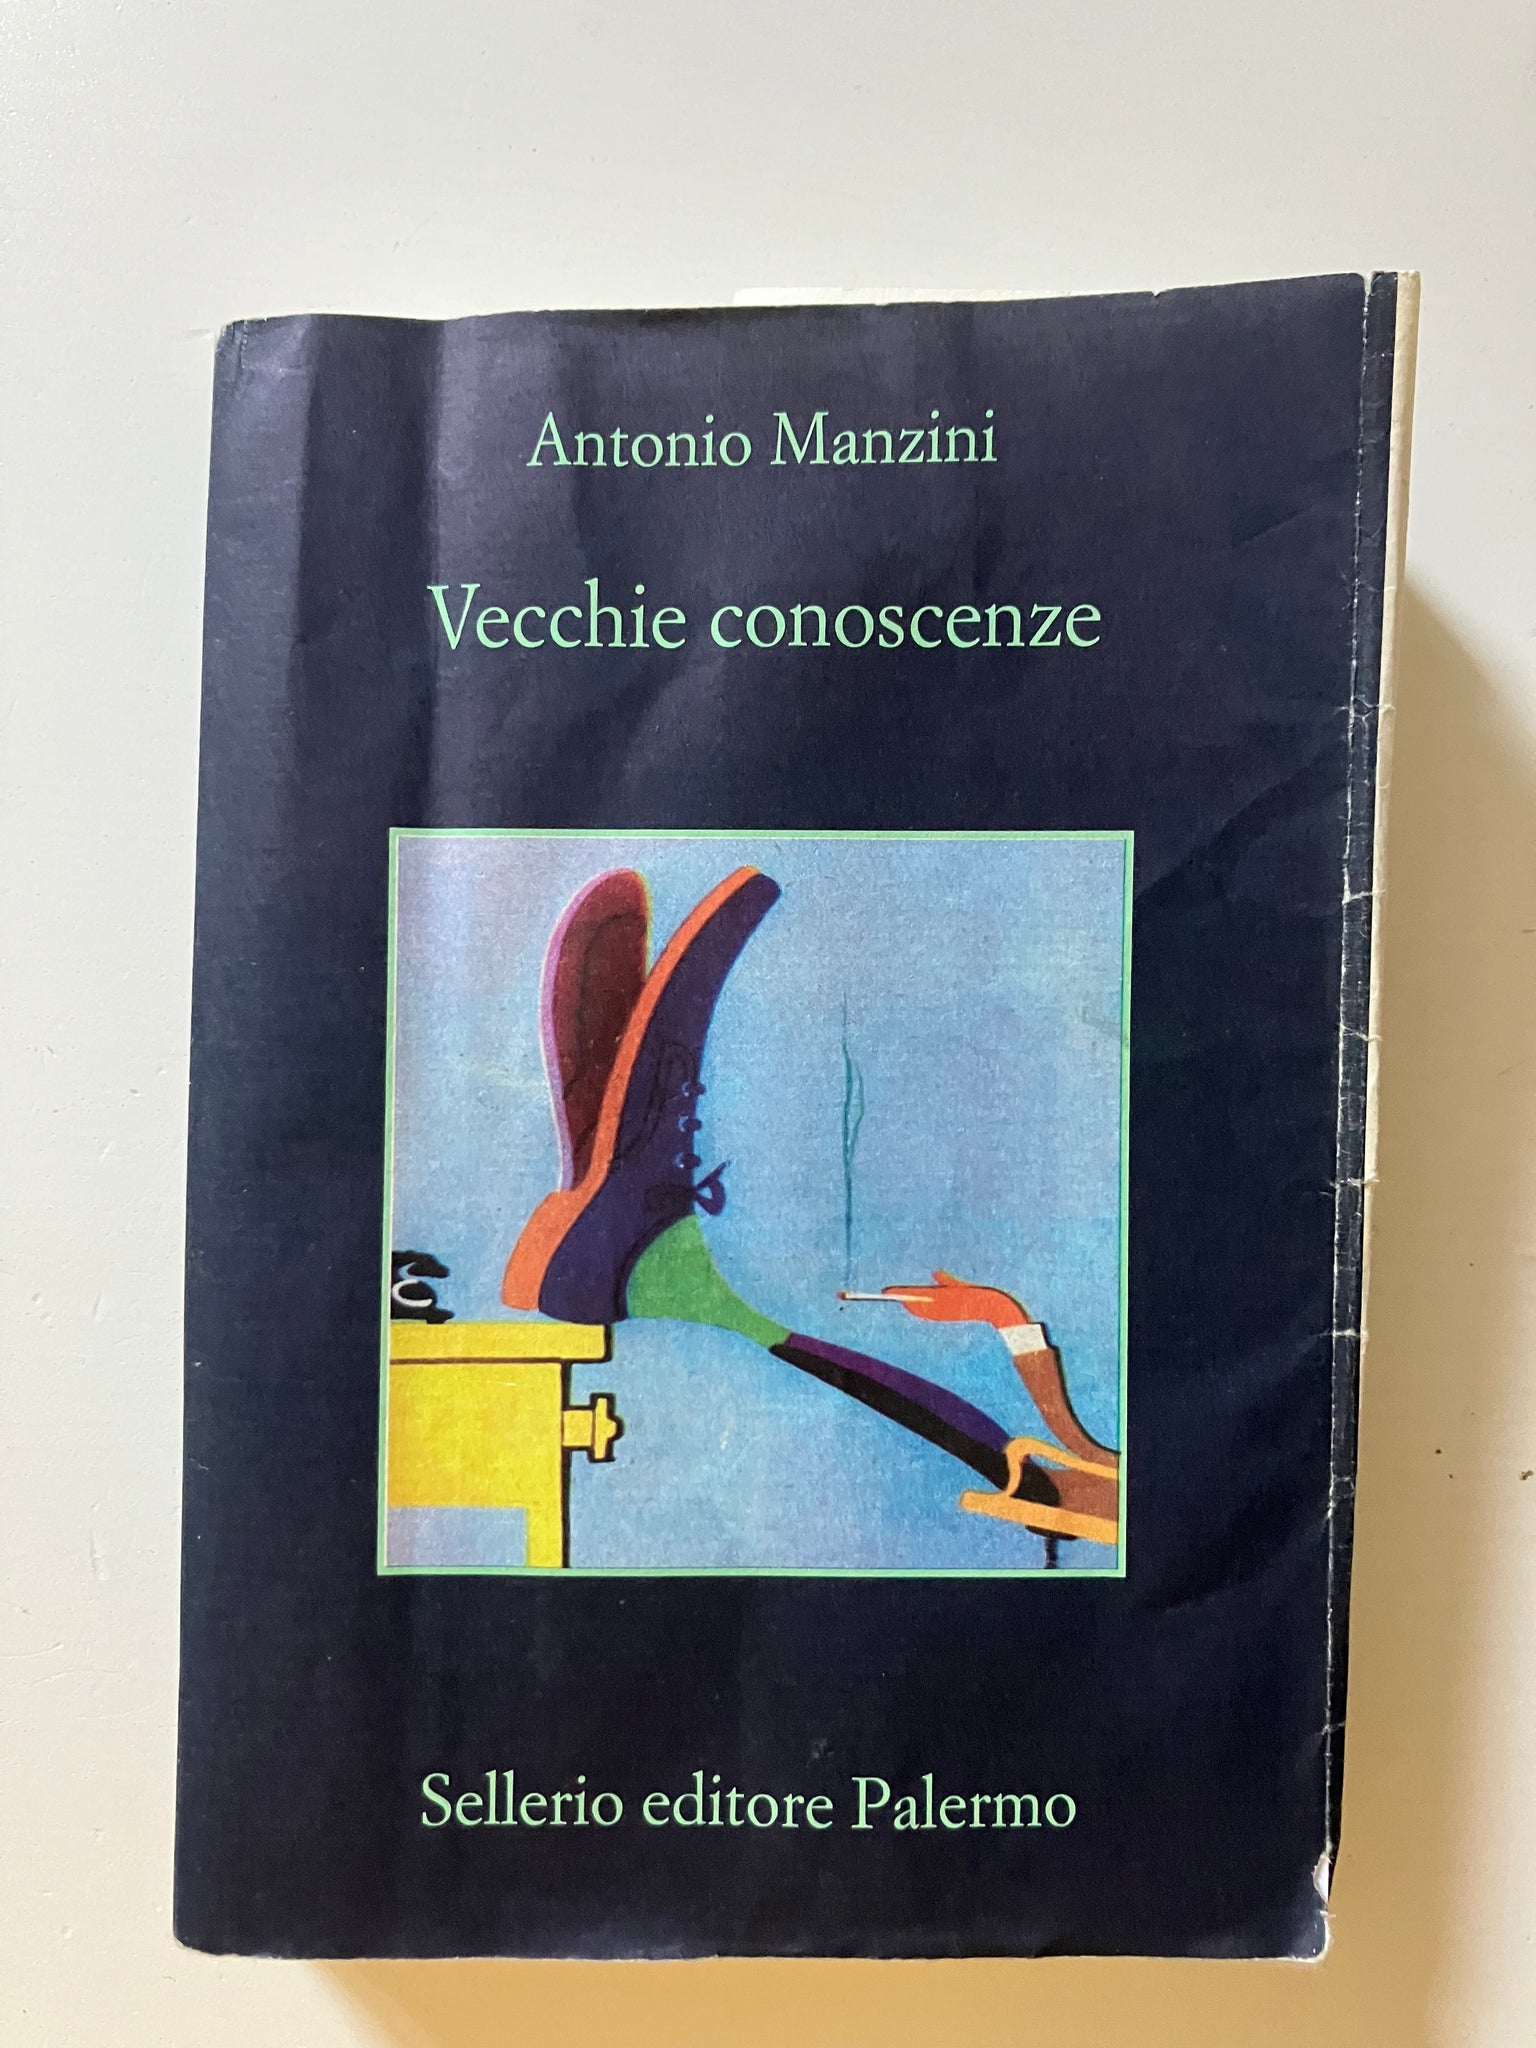 Antonio Manzini - Vecchie conoscenze